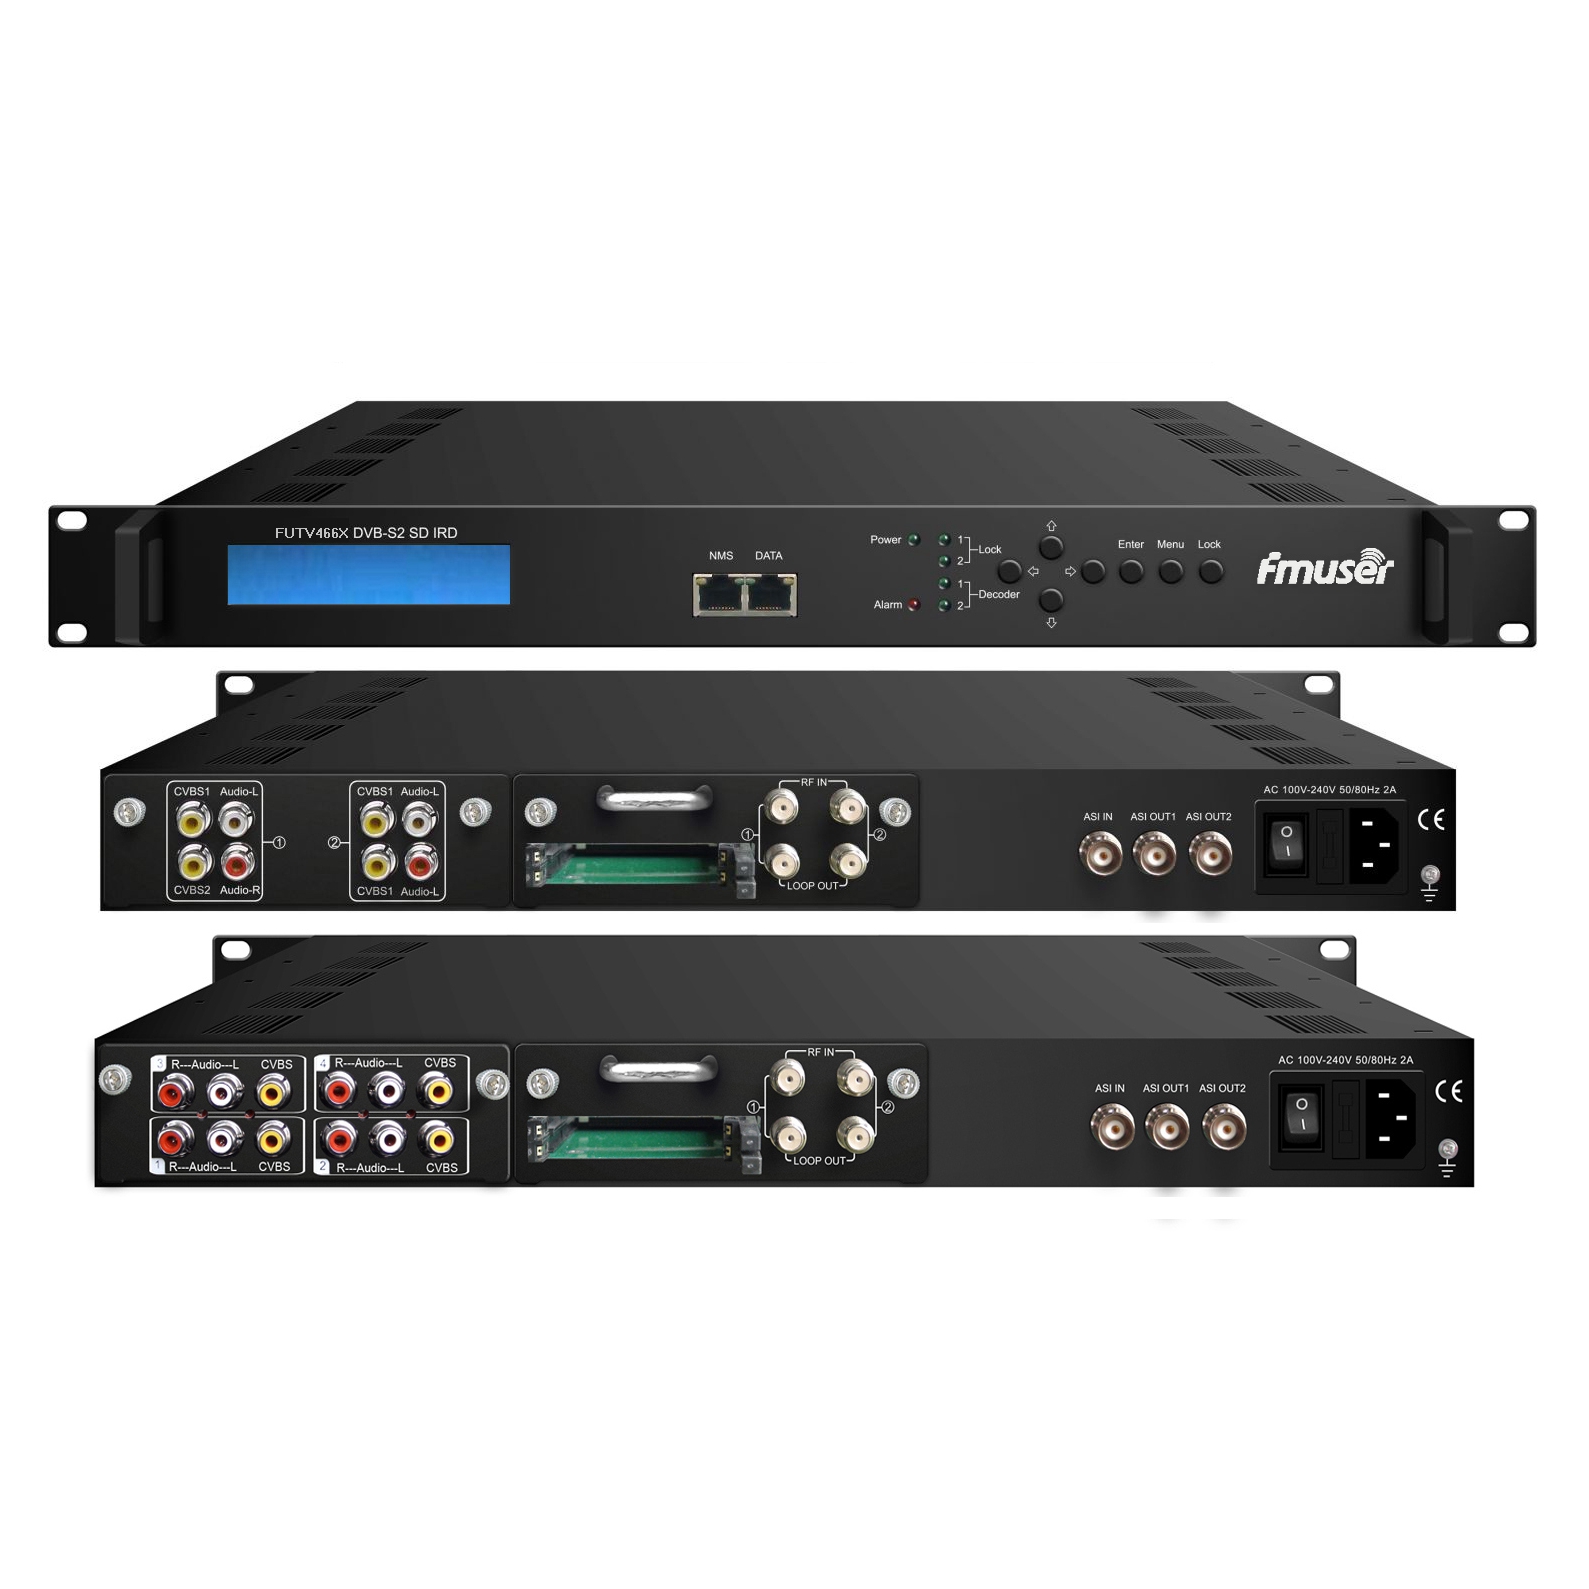 FMUSER FUTV466X 2 Tuner CAM SD IRD (2 DVB-C / T / S / S2 RF Input, 1 ASI IP In, 2 ASI 1 IP Output) kasama ang MUX